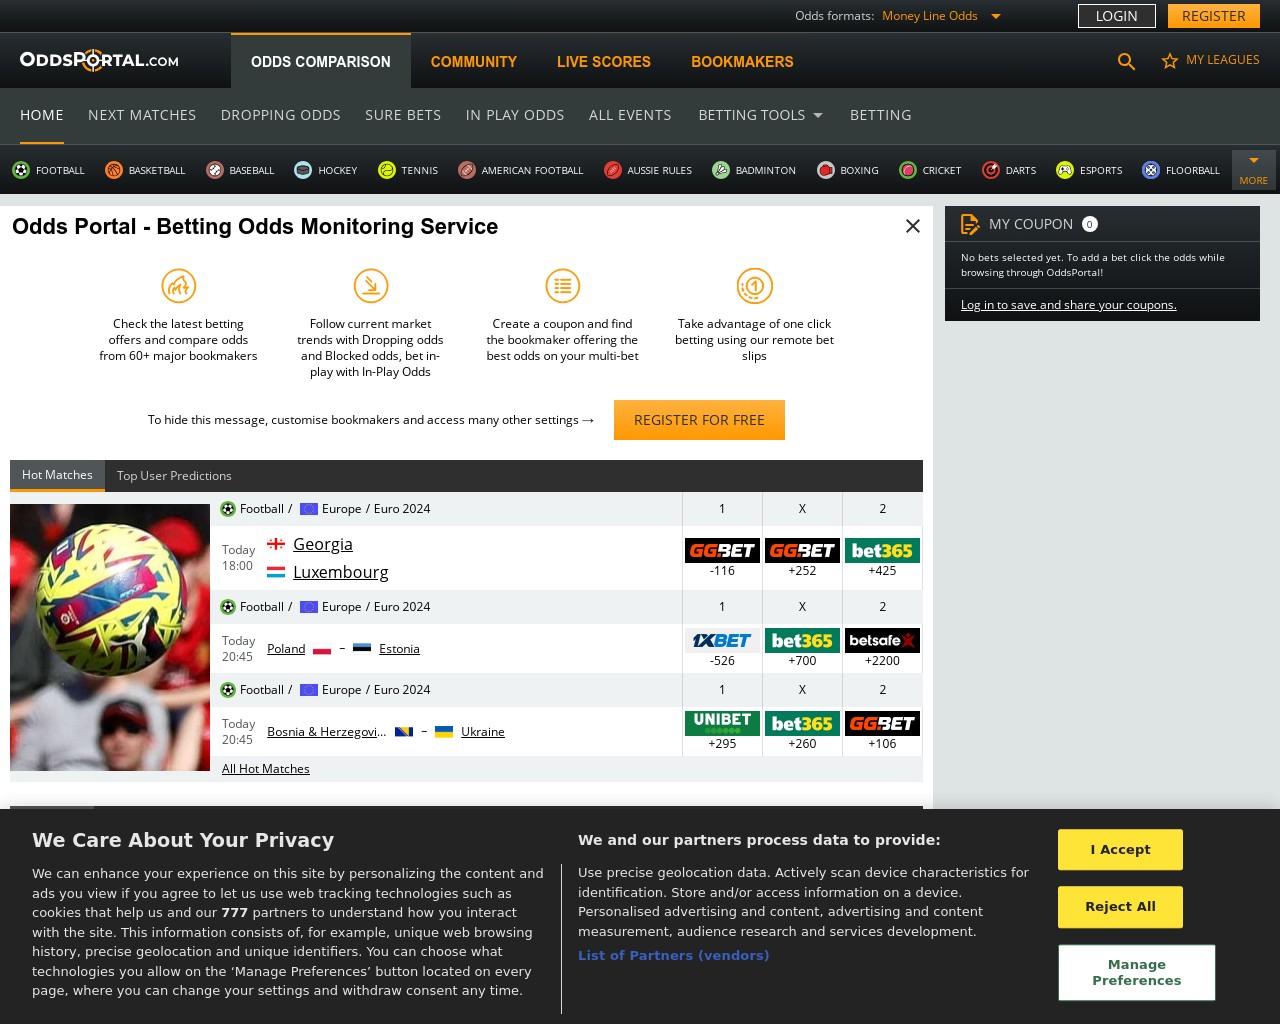 Изображение скриншота сайта - Один з найкращих сайтів, де можна знайти інформацію про букмекерські контори